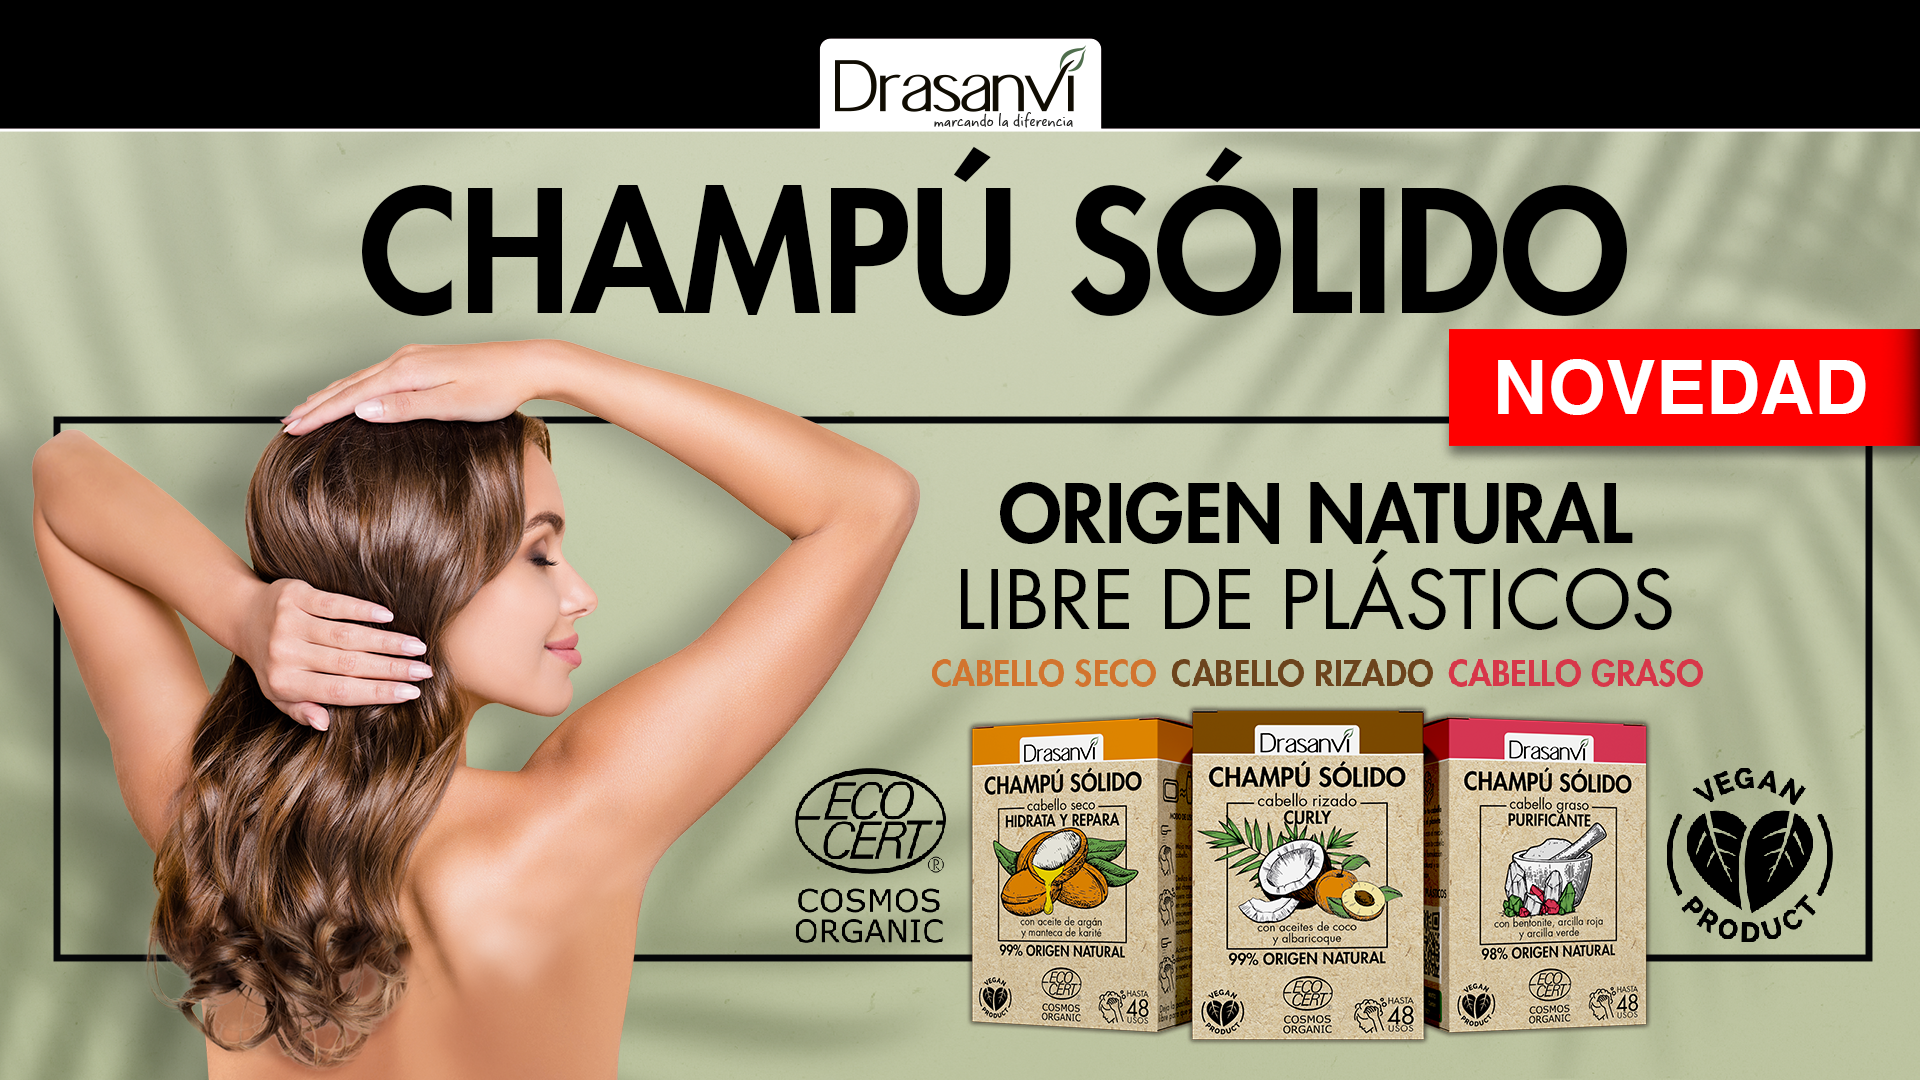 Drasanvi revoluciona el mundo de la cosmética con sus nuevos champús sólidos - León - COPE